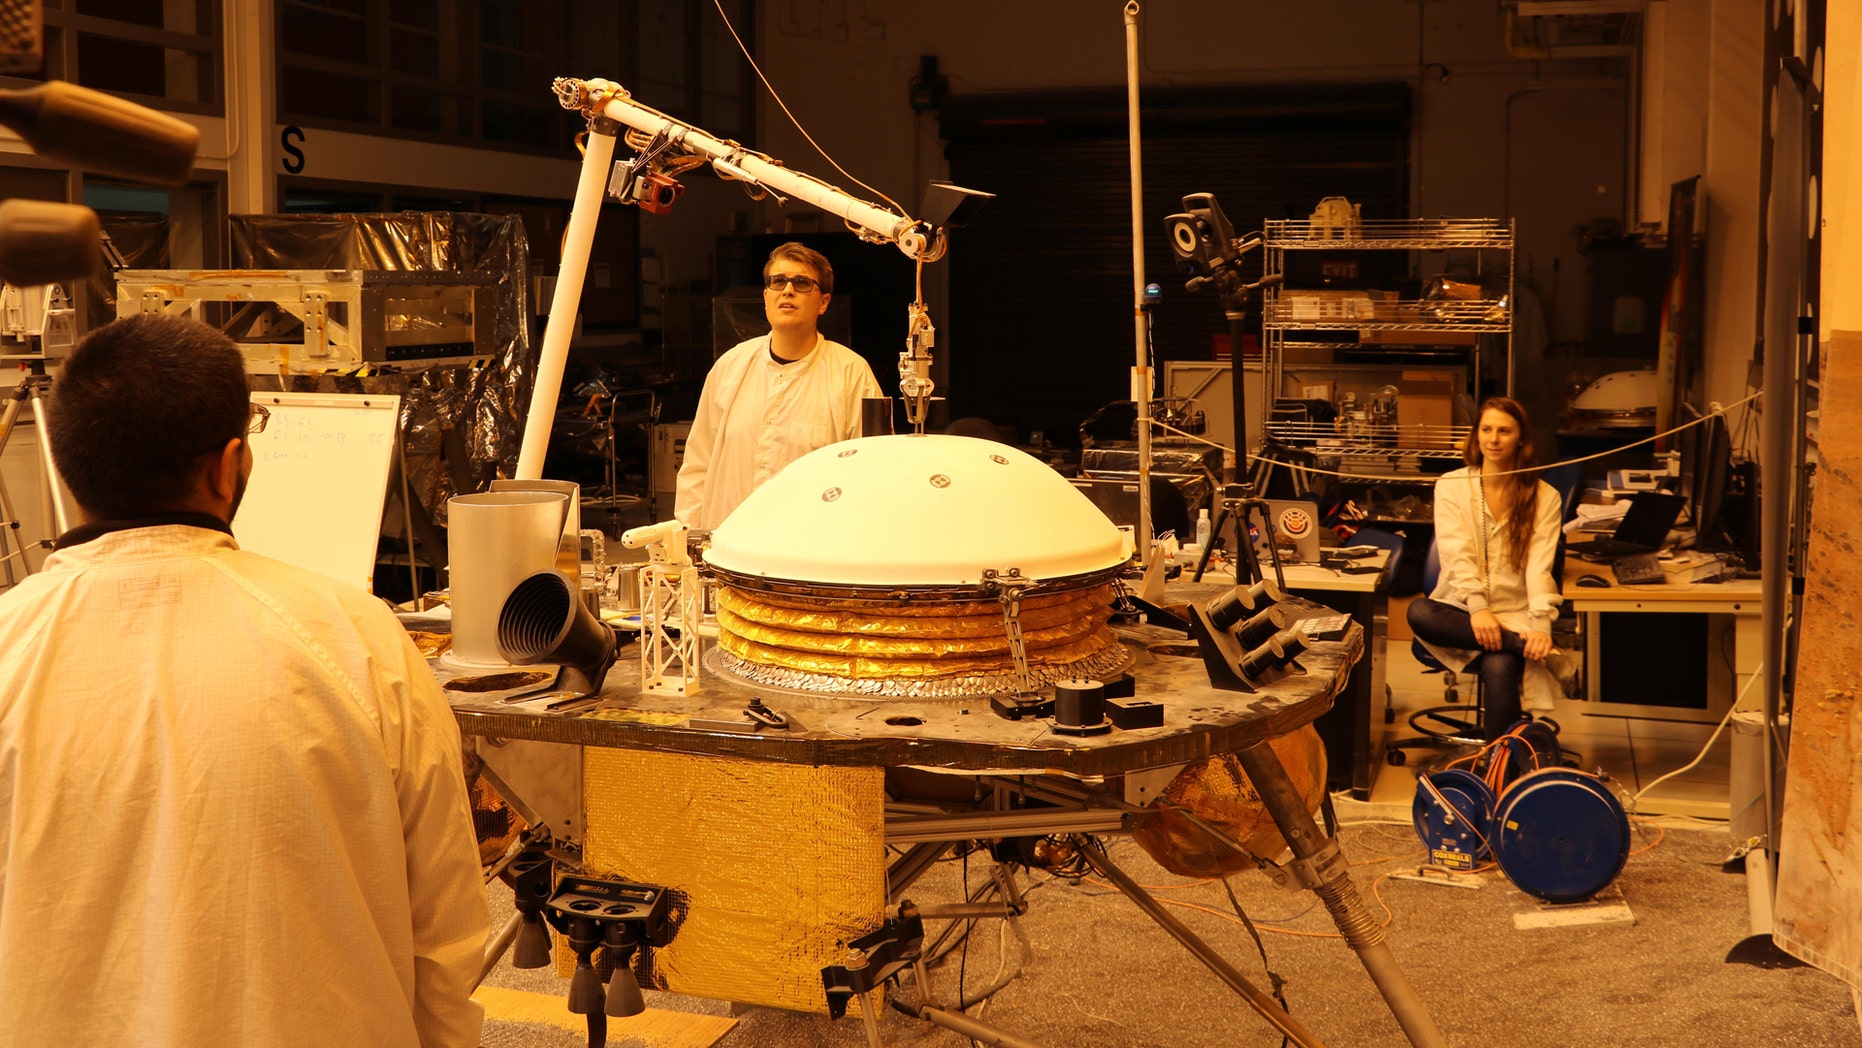 La mission InSight de la NASA teste une version d'ingénierie du bras robotique du vaisseau spatial dans un environnement similaire à celui de la planète Mars au Jet Propulsion Laboratory de la NASA. Le grappin à cinq doigts au bout du bras robotique soulève le Wind and Thermal Shield, une protection pour le sismomètre InSight. Le test est effectué sous le rougeâtre 